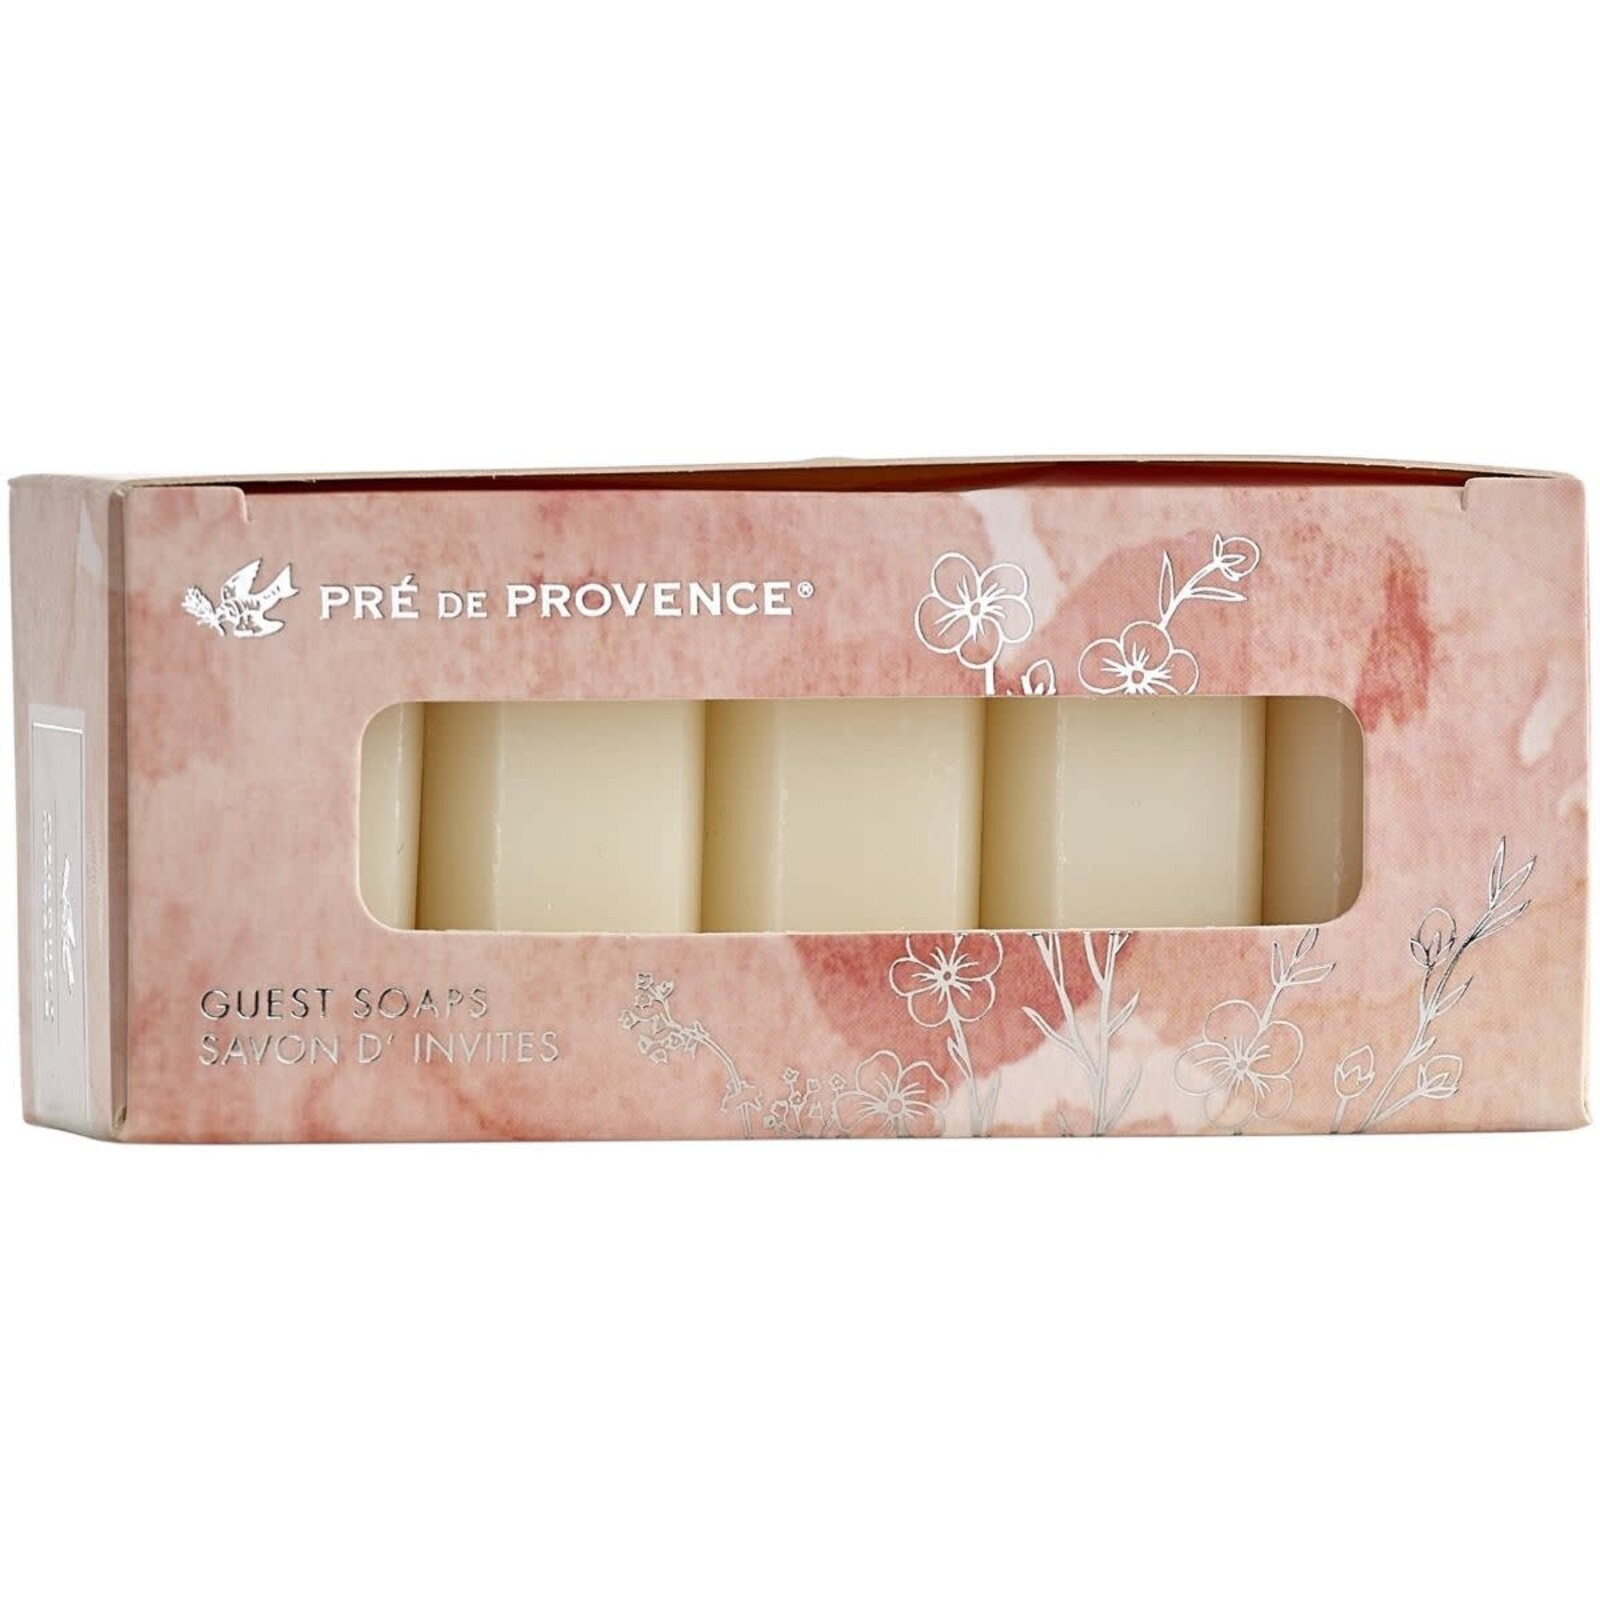 Pre de Provence Gift Soap 5 Pack - Milk      20115LT loading=